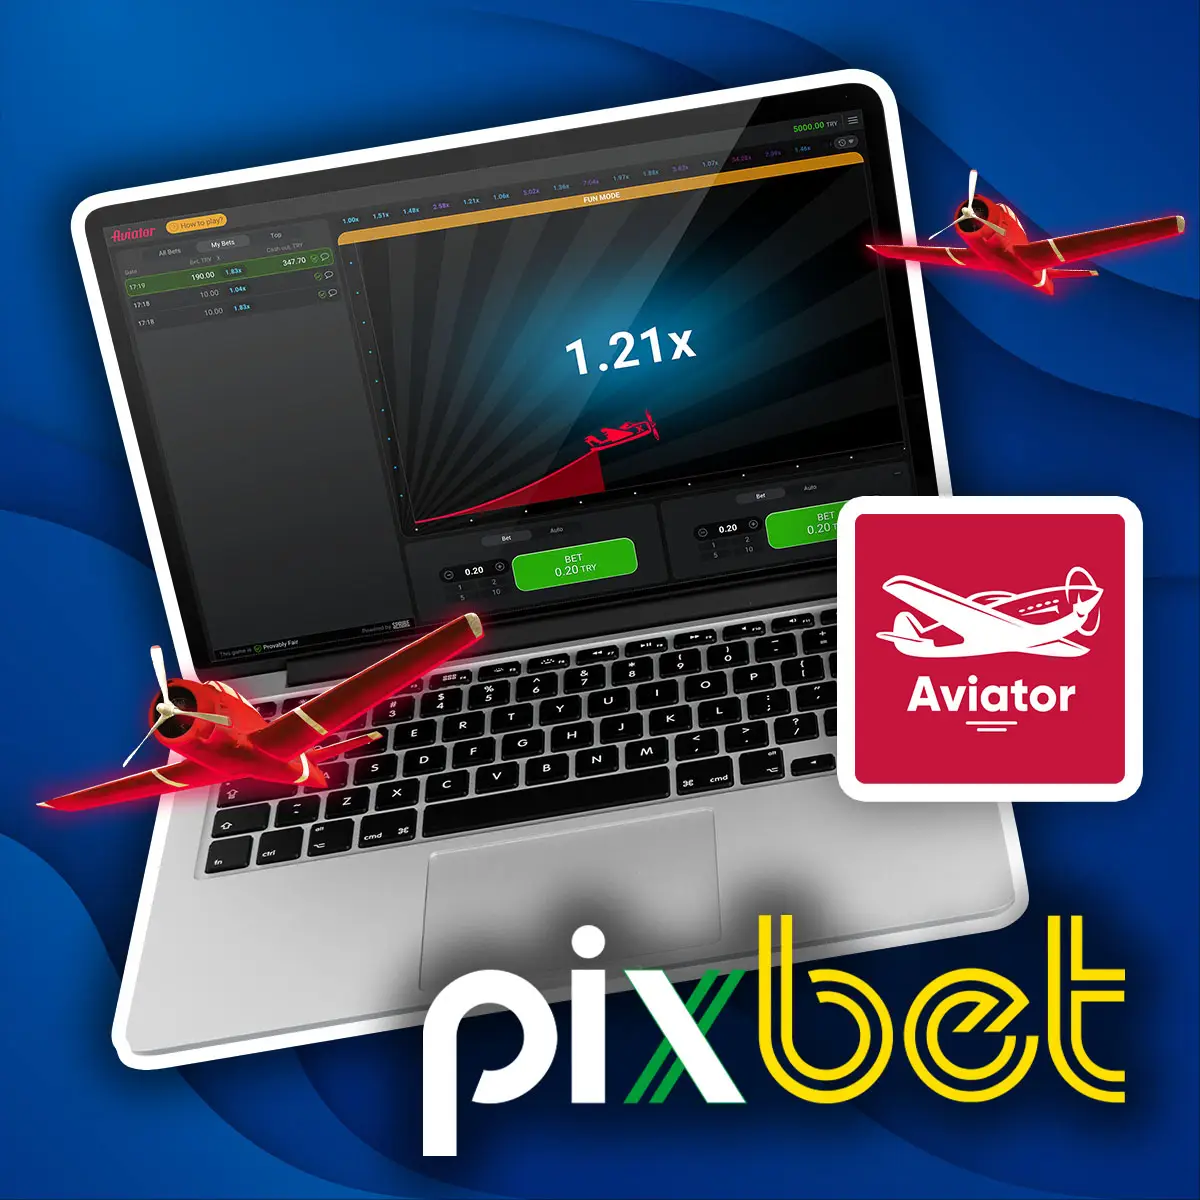 Análise completa das regras de jogo do Pixbet Aviator no Brasil